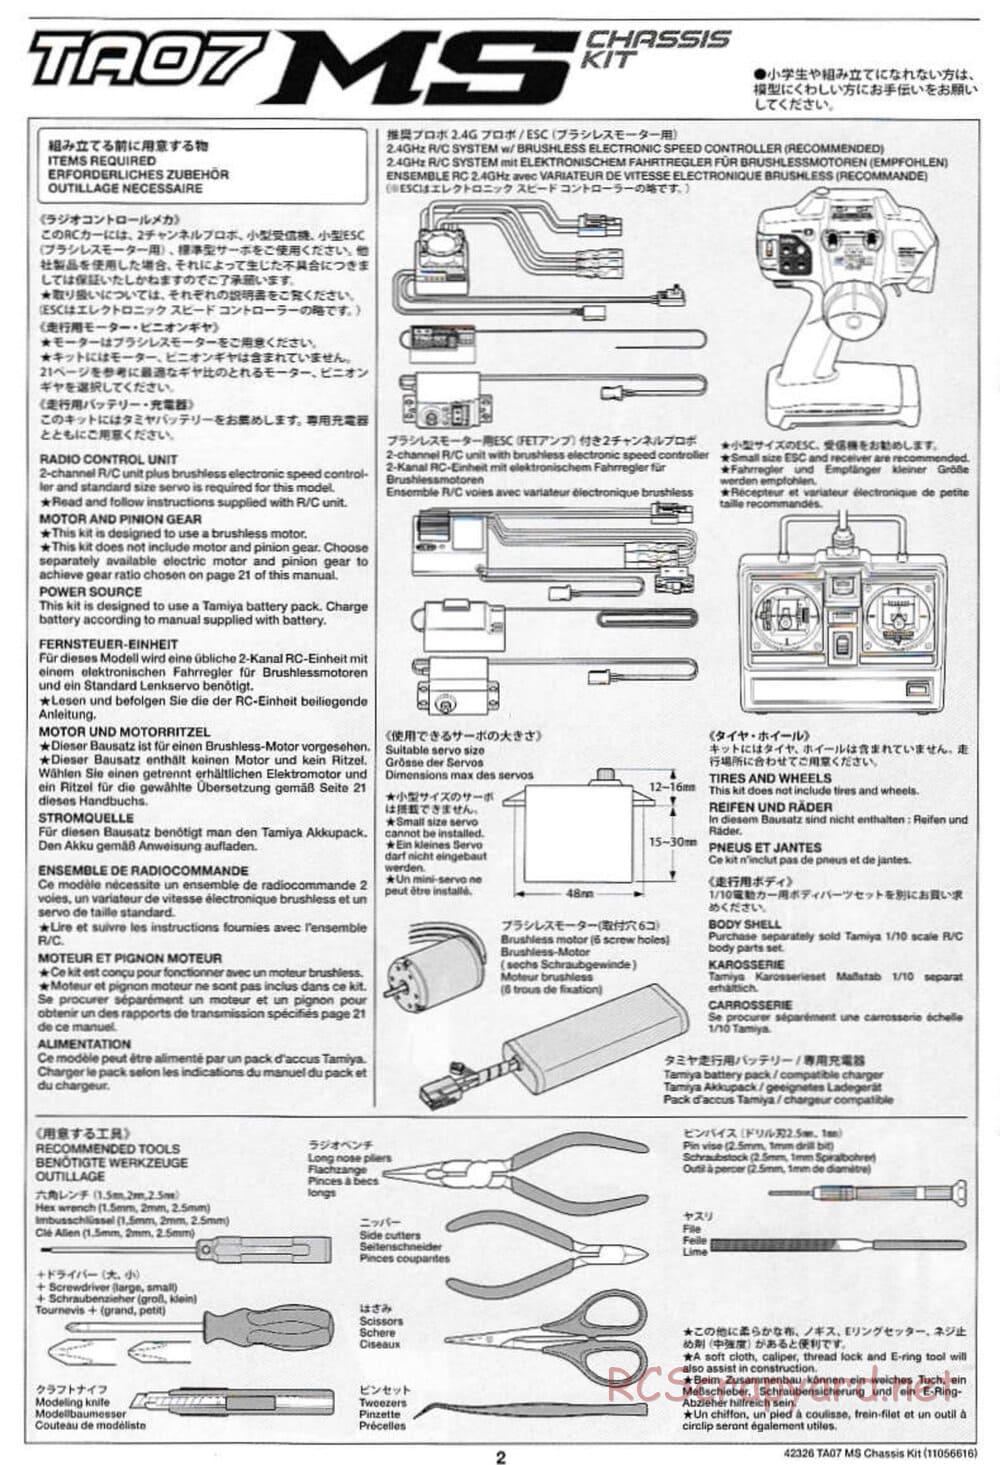 Tamiya - TA07 MS Chassis - Manual - Page 2